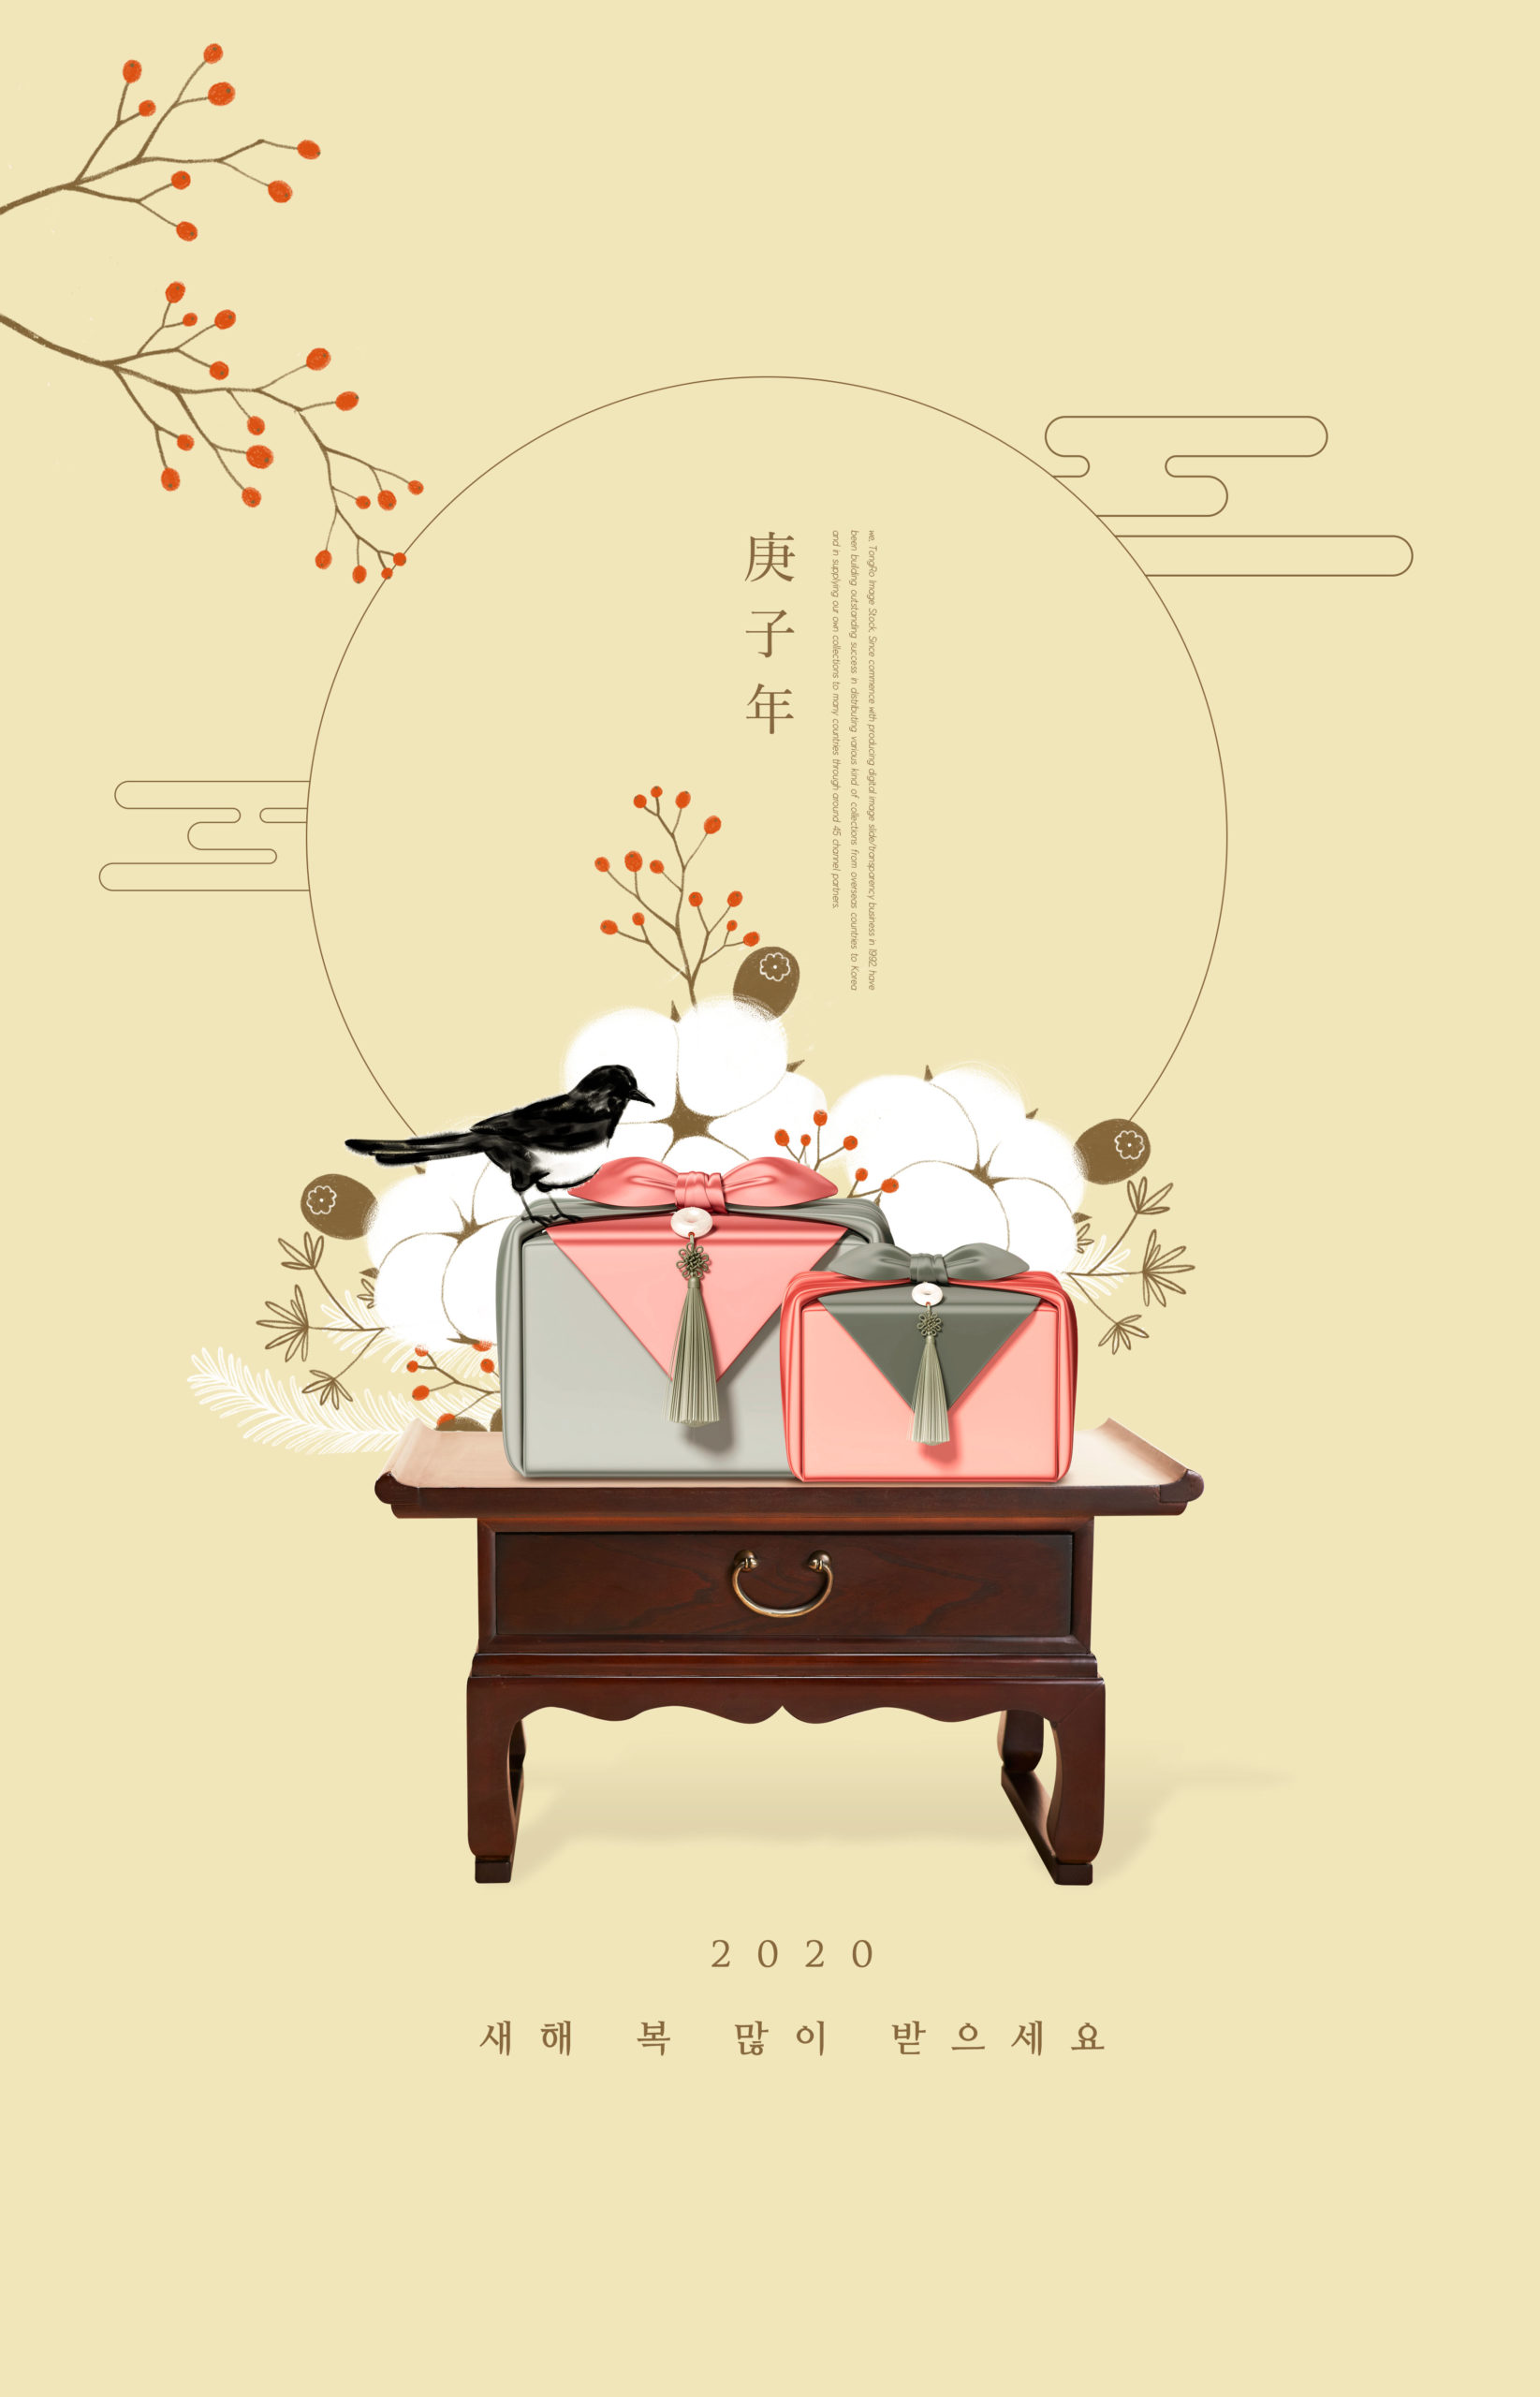 庚子年新年礼品主题海报设计模板[PSD]插图